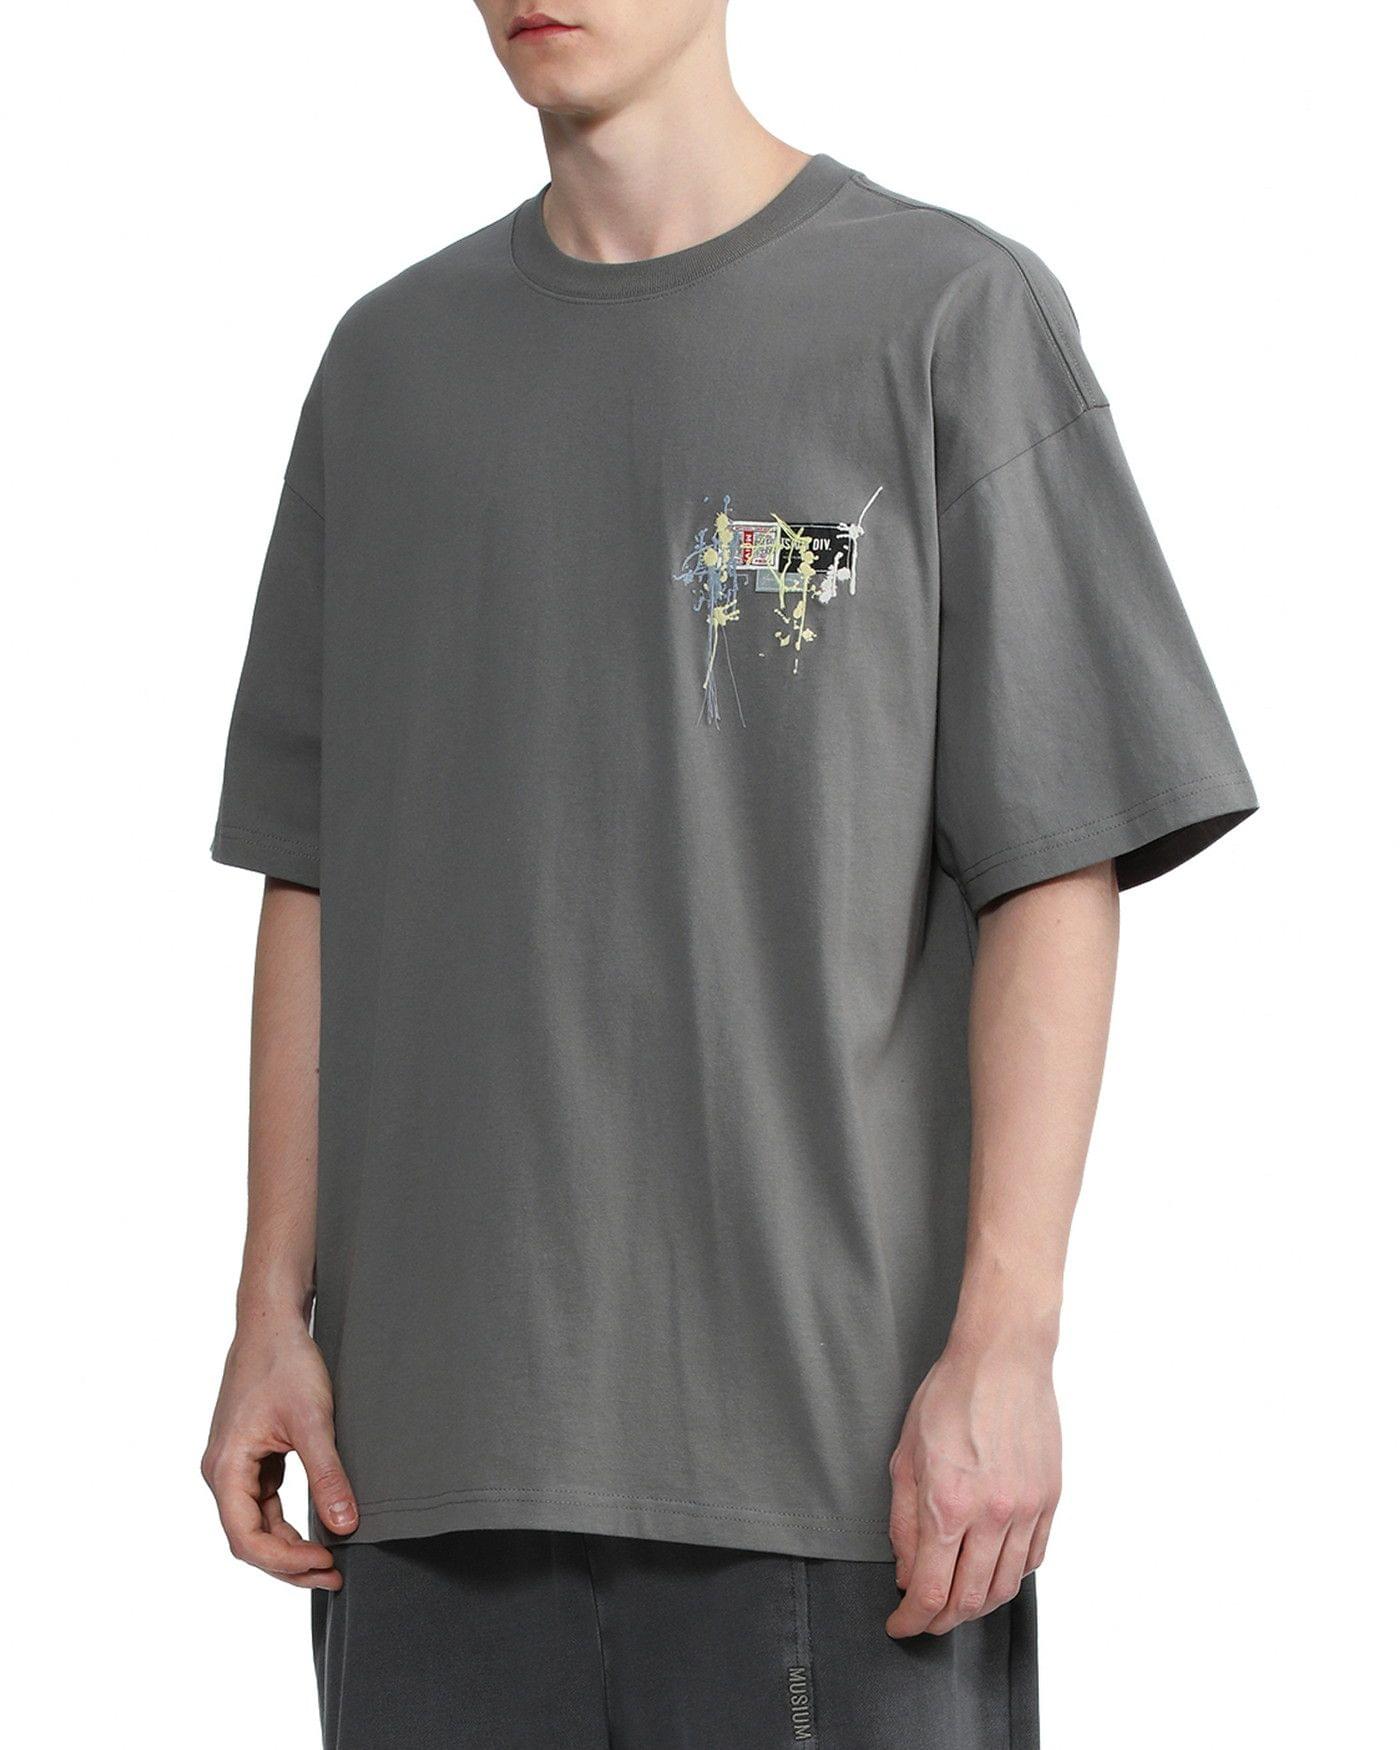 Men's Patch T-shirt in Dark Grey